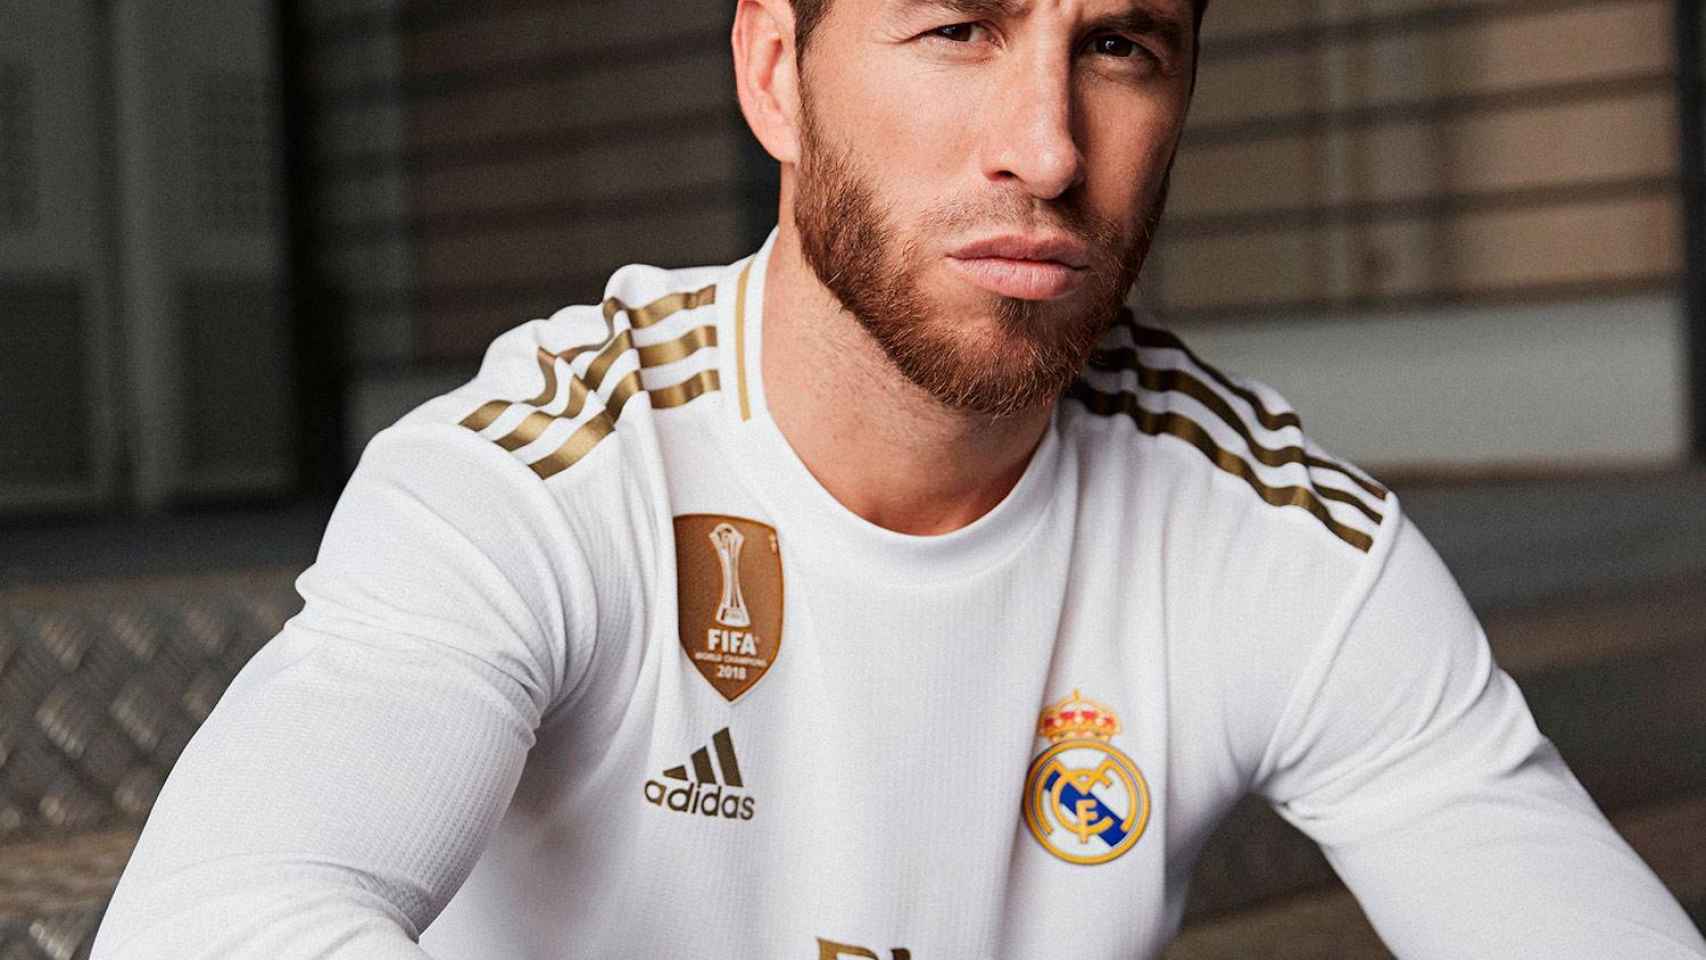 El Real Madrid presenta su nueva camiseta para temporada 2019/2020